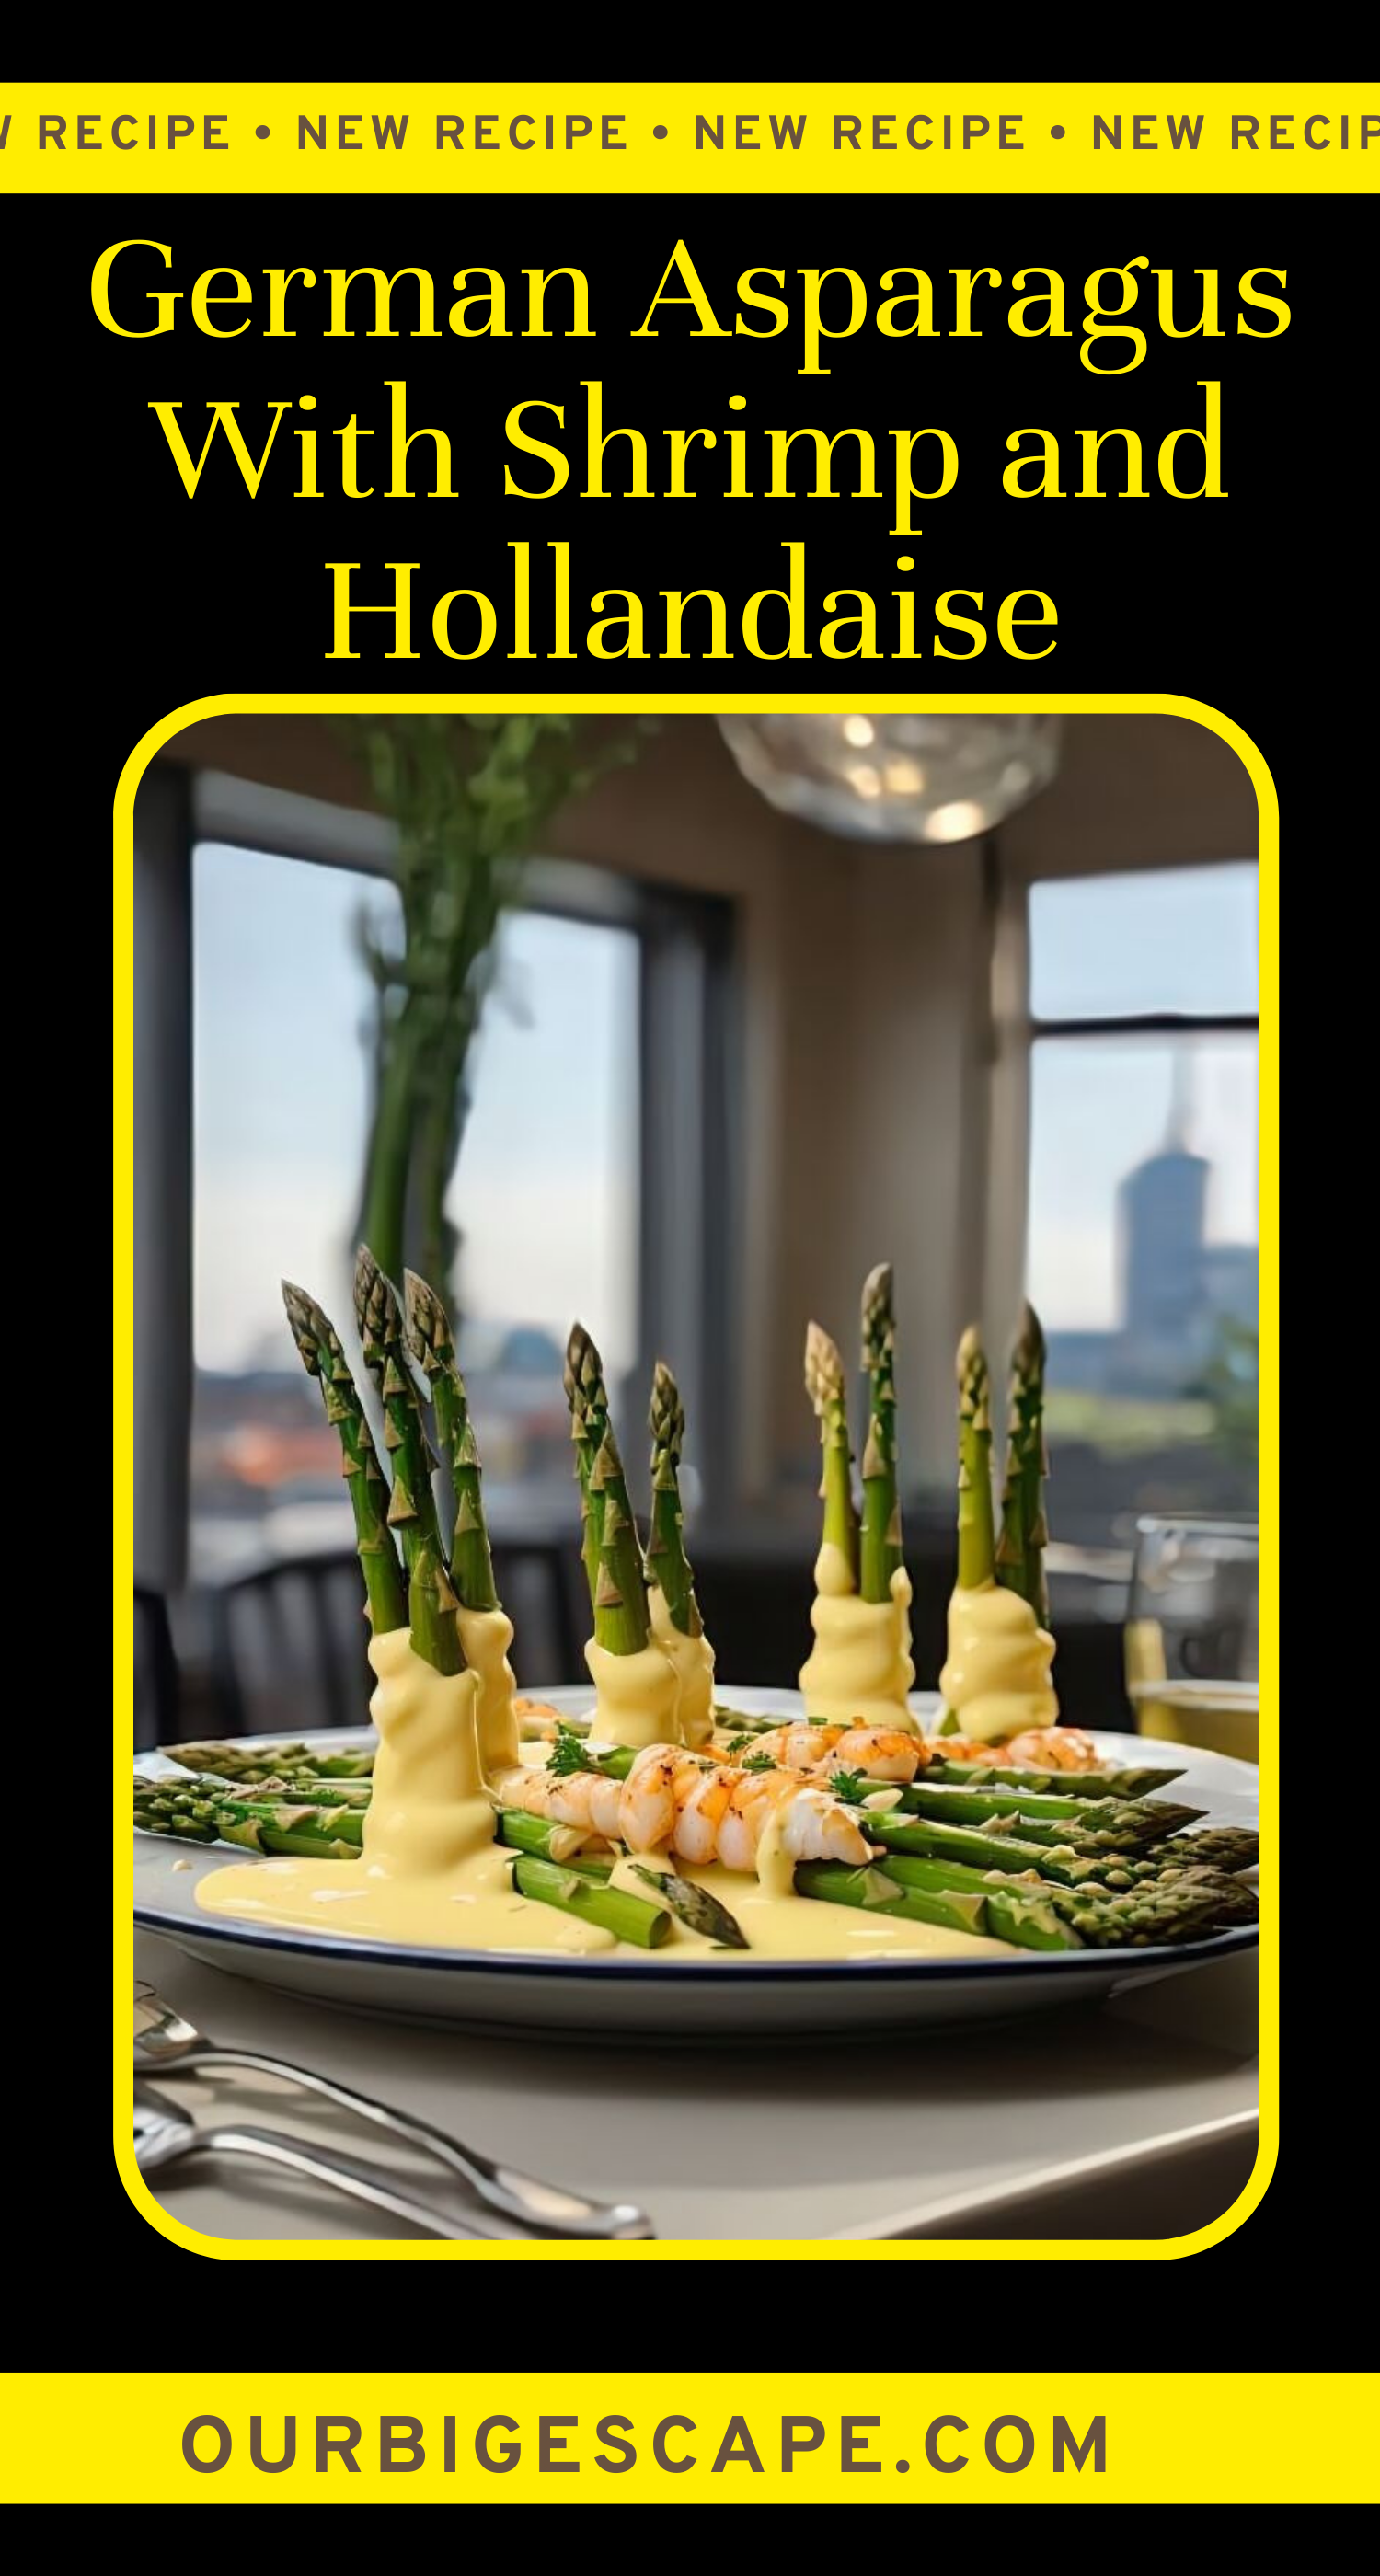 German Asparagus With Shrimp and Hollandaise